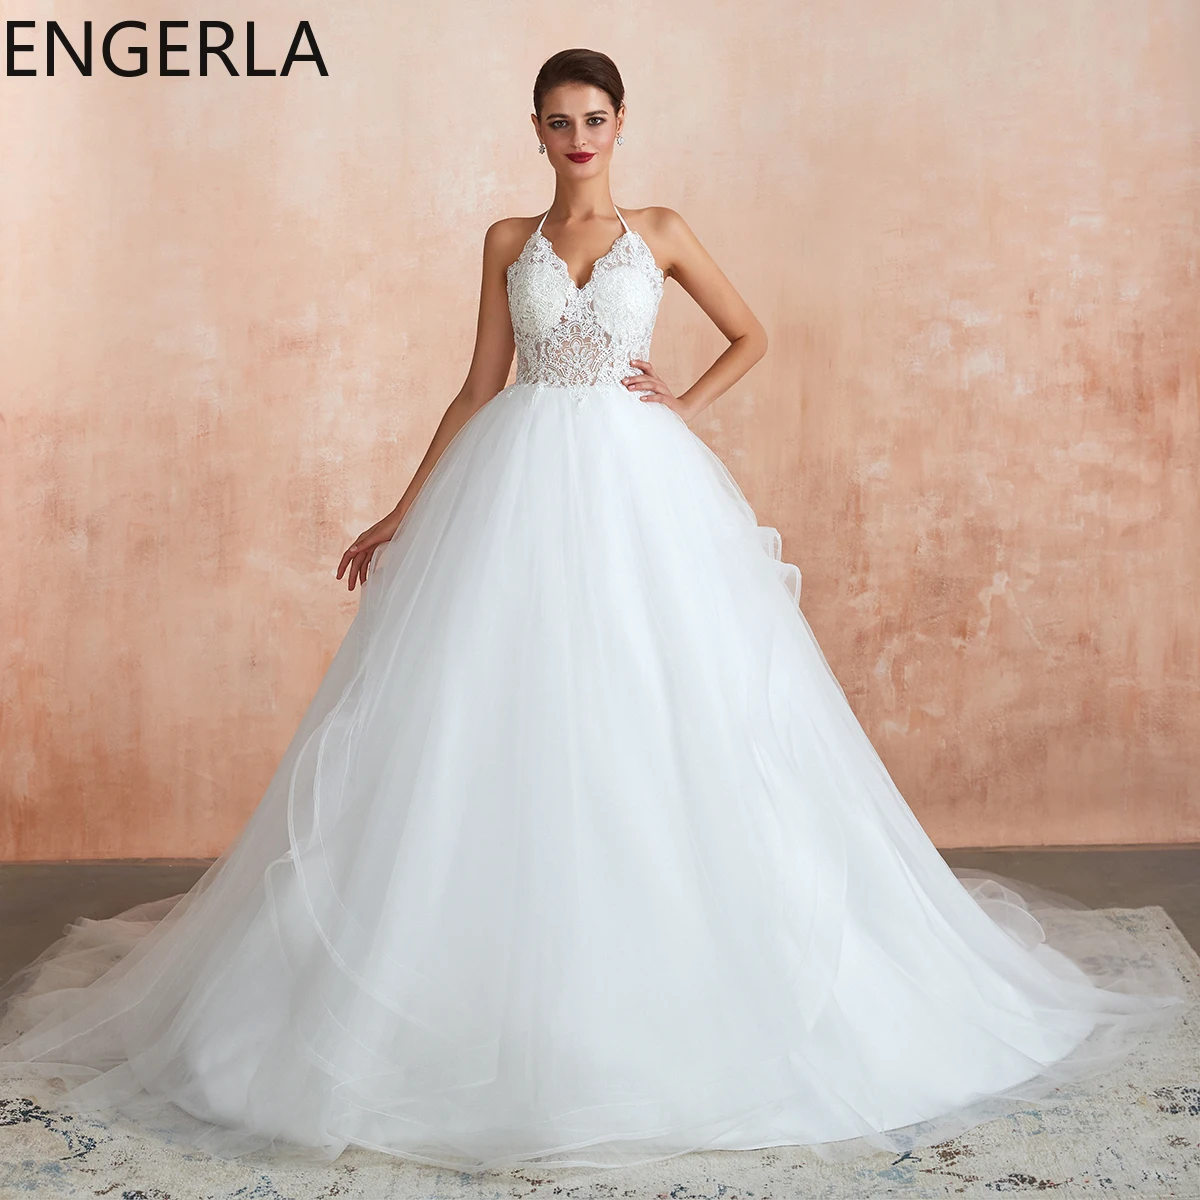 Свадебное платье с длинным рукавом белое платье-русалка недорогое элегантное